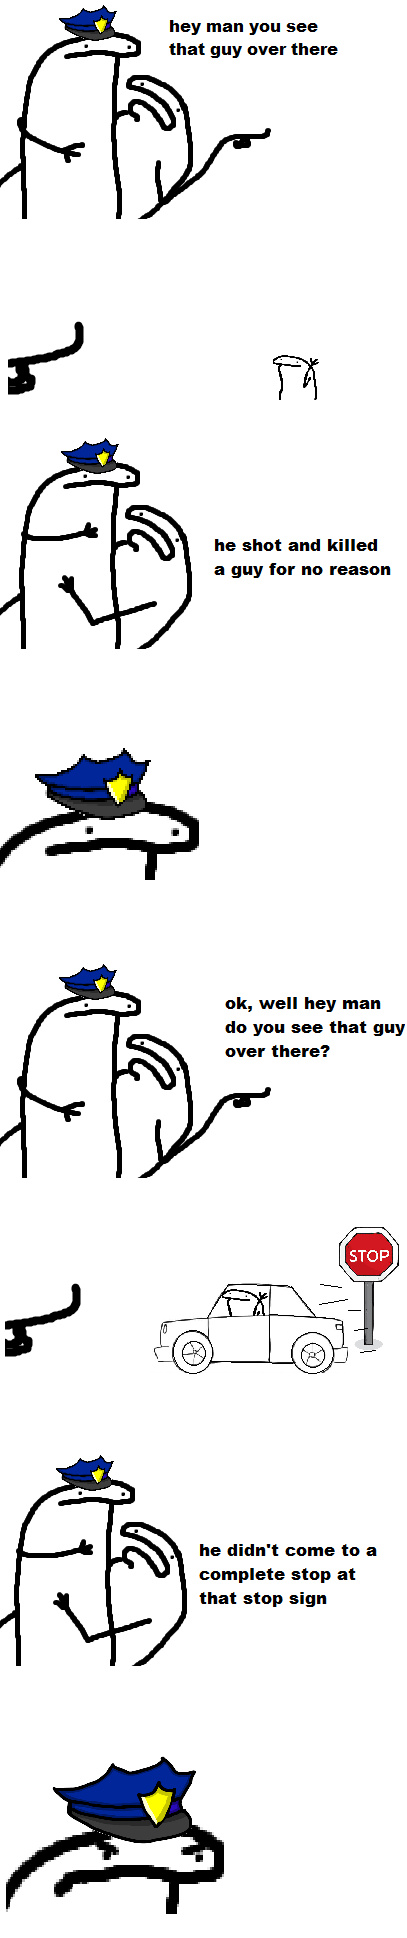 Police - meme